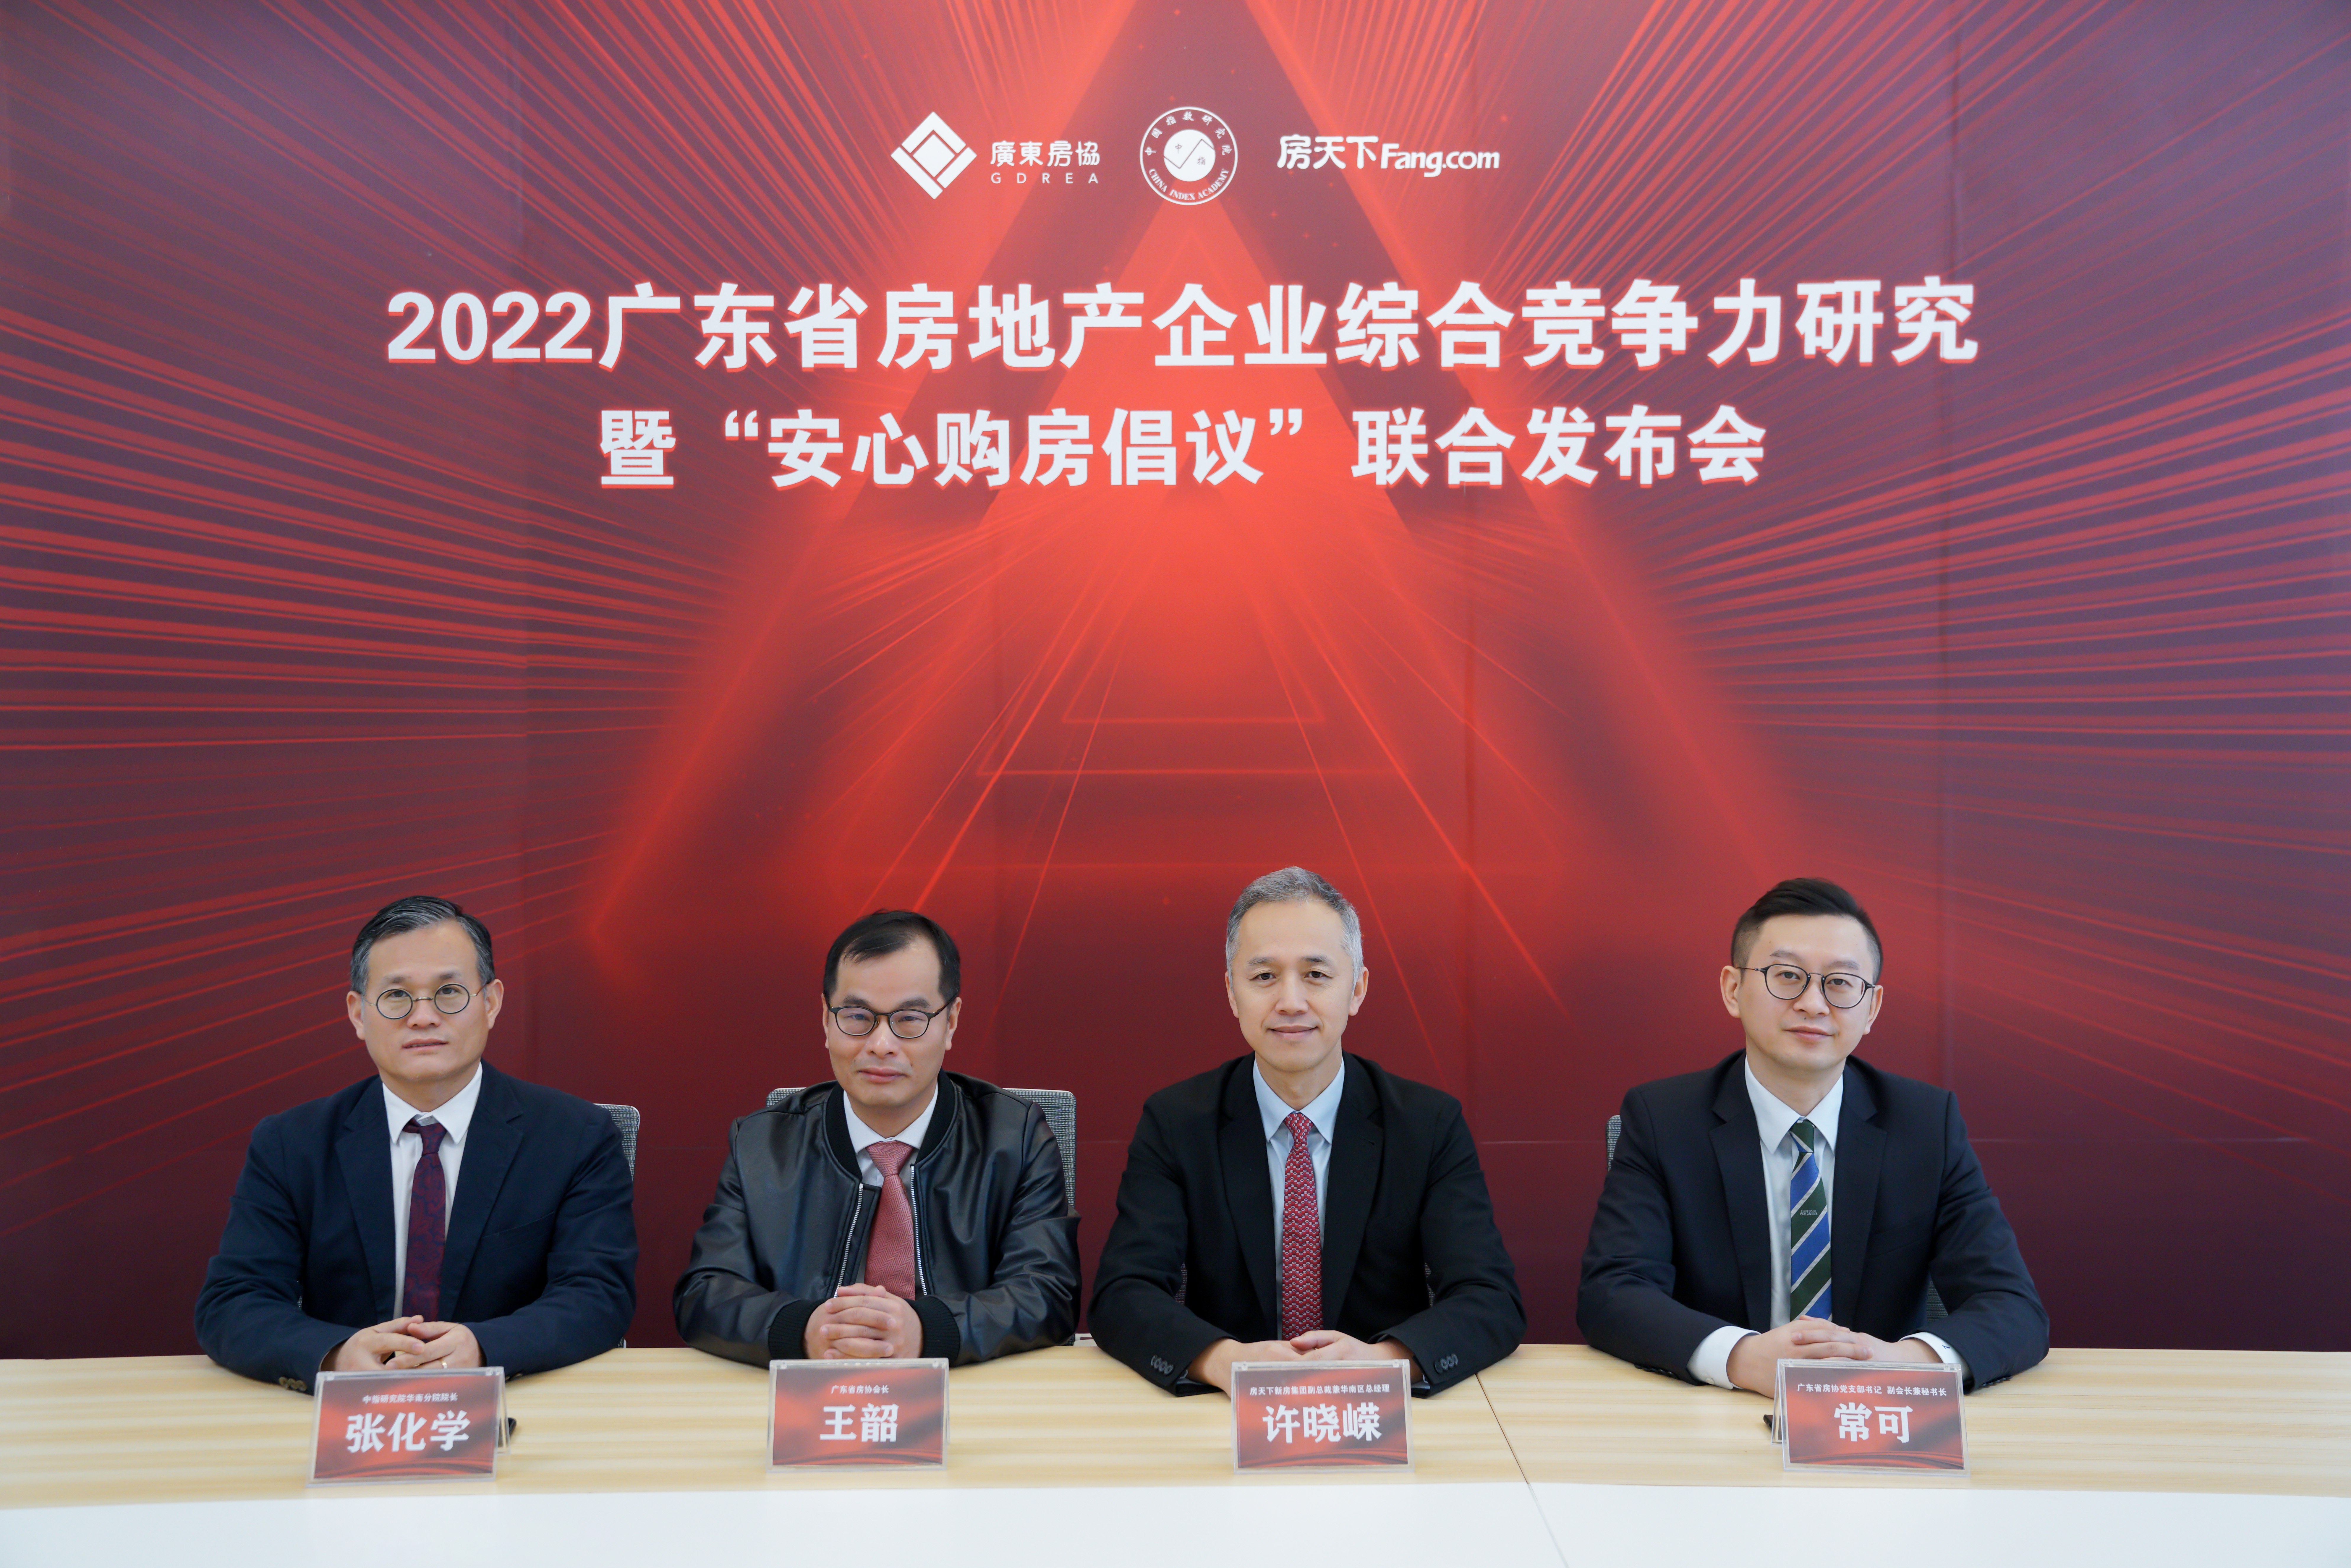 2022广东房企综合竞争力研究正式启动 行业《安心购房倡议》同步发起